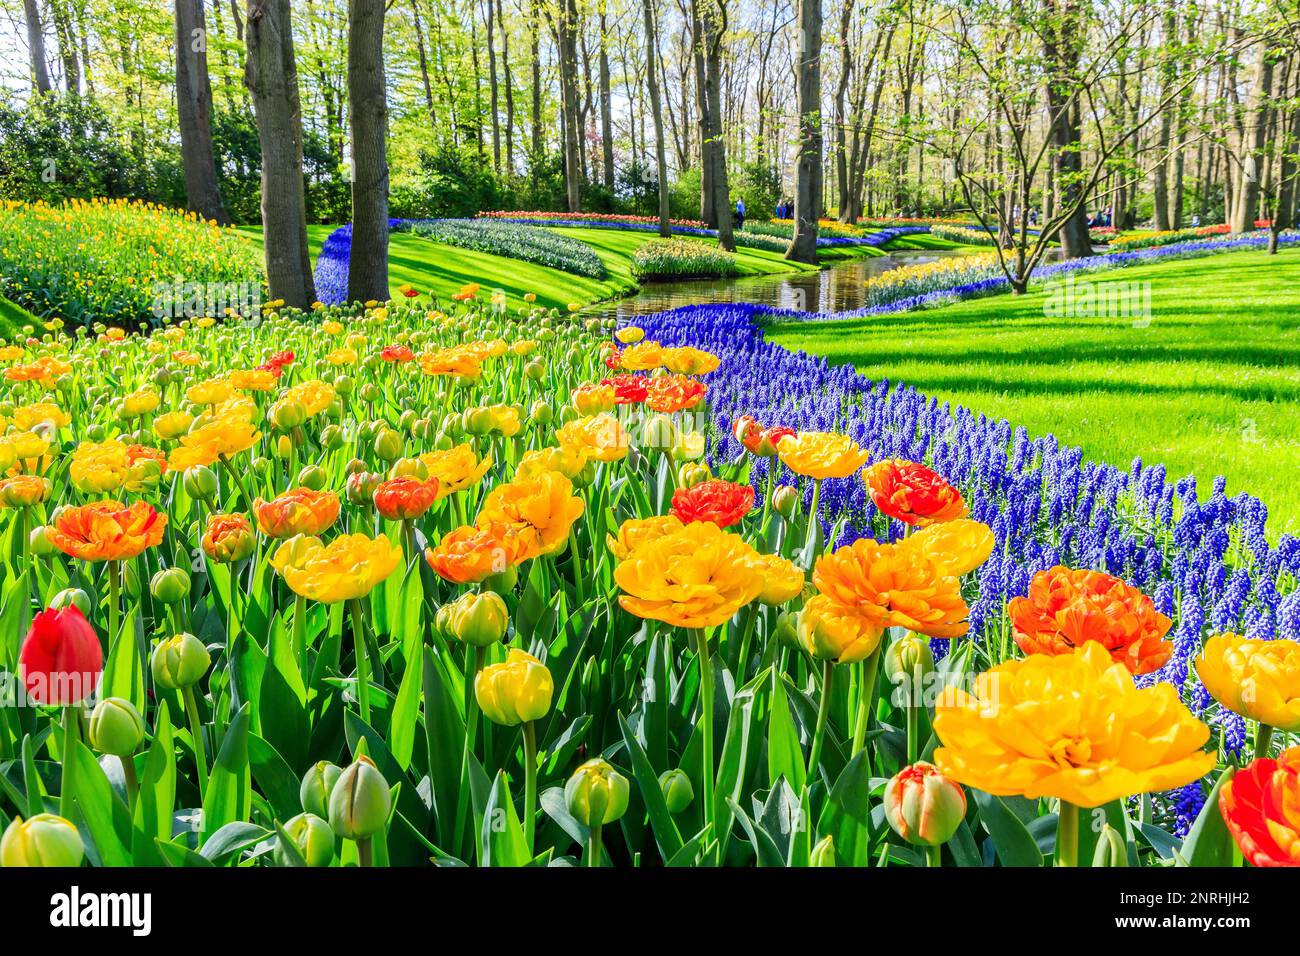 Blühende farbenfrohe Tulpen blühten im öffentlichen Blumengarten. Lisse, Holland, Niederlande. Stockfoto